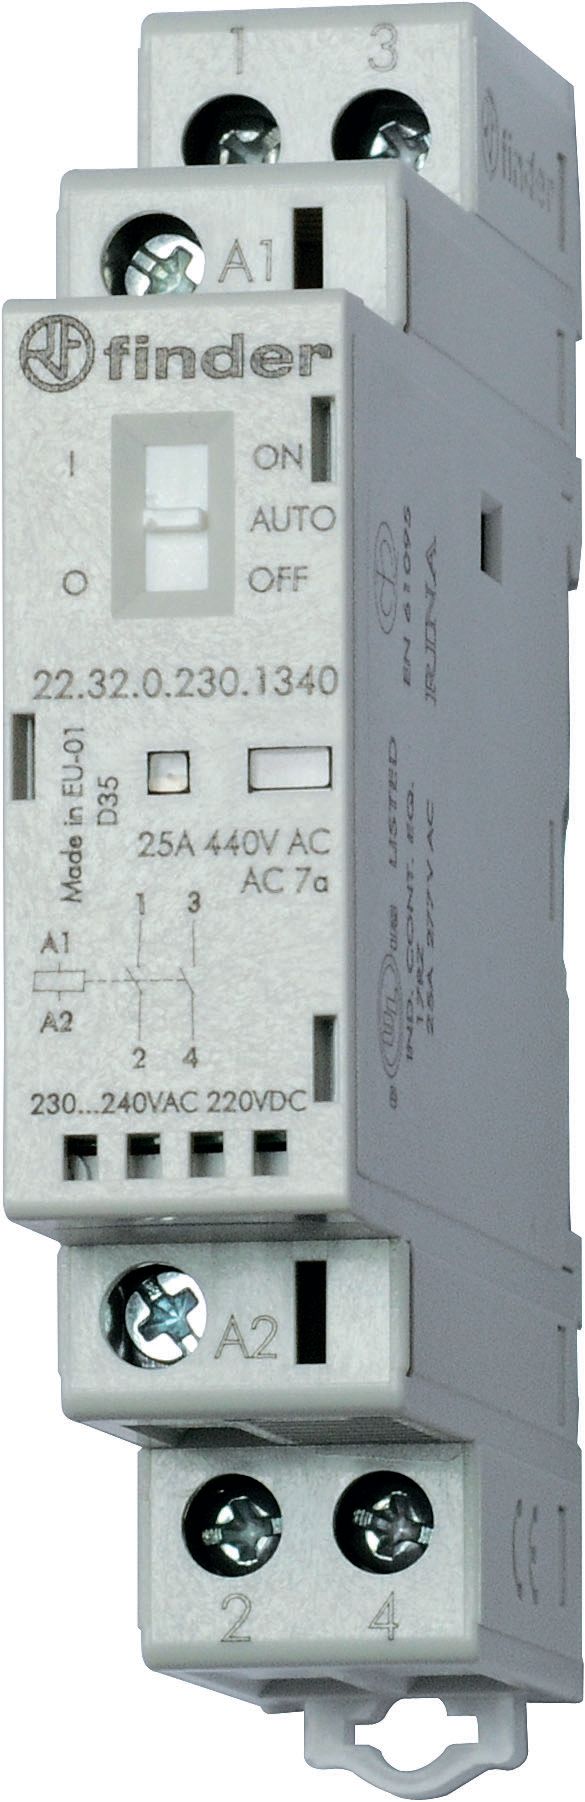 Изображение Finder Модульный контактор; 2NC 25А; контакты AgSnO2; катушка 230В АС/DC; ширина 17.5мм; степень защиты IP20; опции: переключатель Авто-Вкл-Выкл + мех